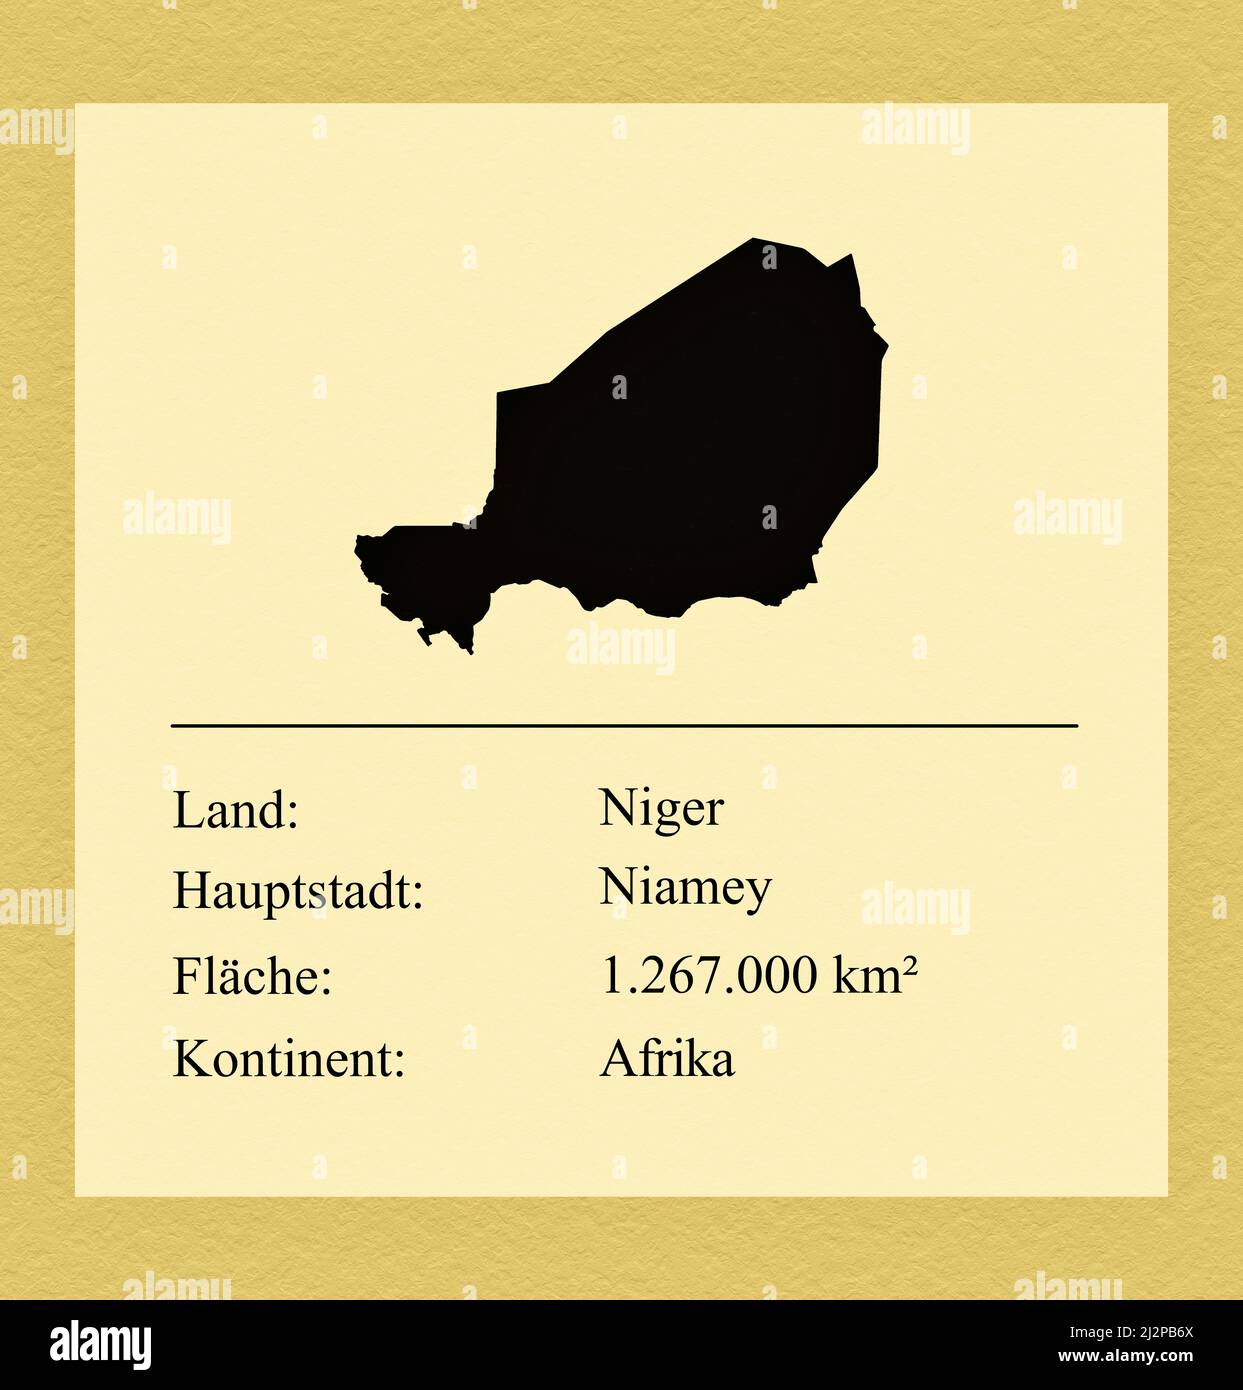 Umrisse des Landes Niger, darunter ein kleiner Steckbrief mit Ländernamen, Hauptstadt, Fläche und Kontinent Stock Photo